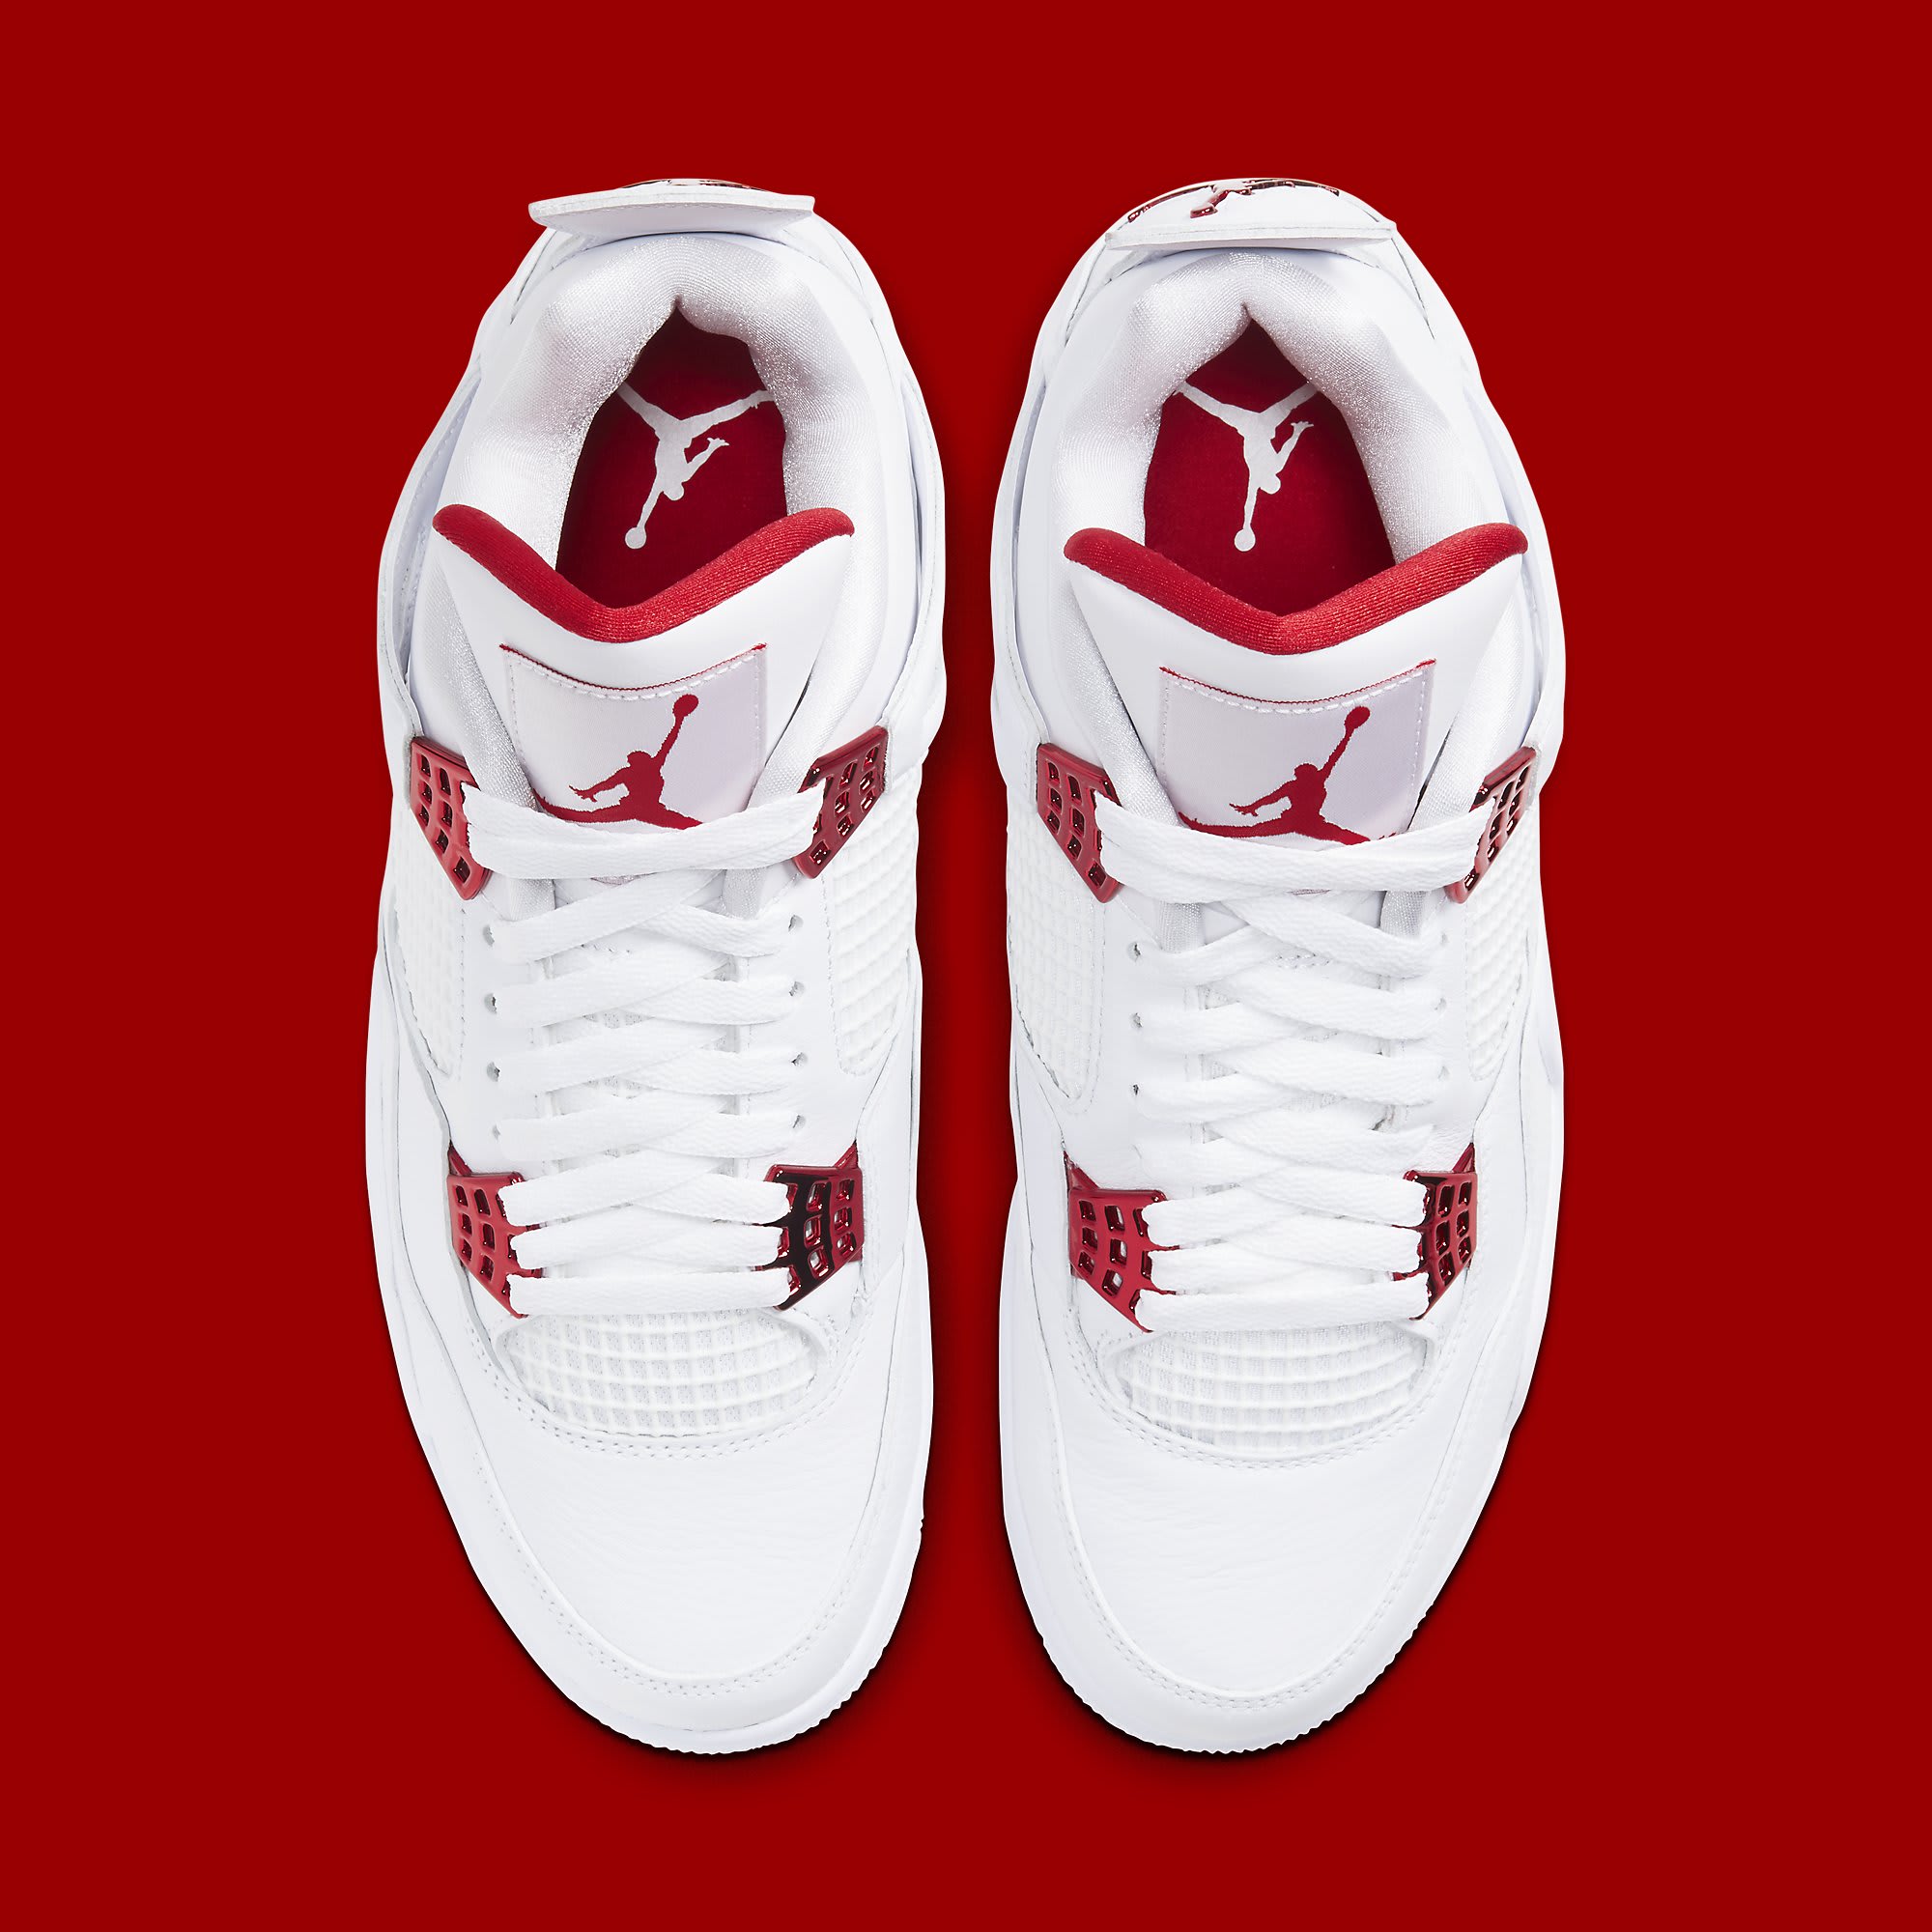 Air Jordan 4 Metallic Red Release Date CT8527-112 Pair | Sole 